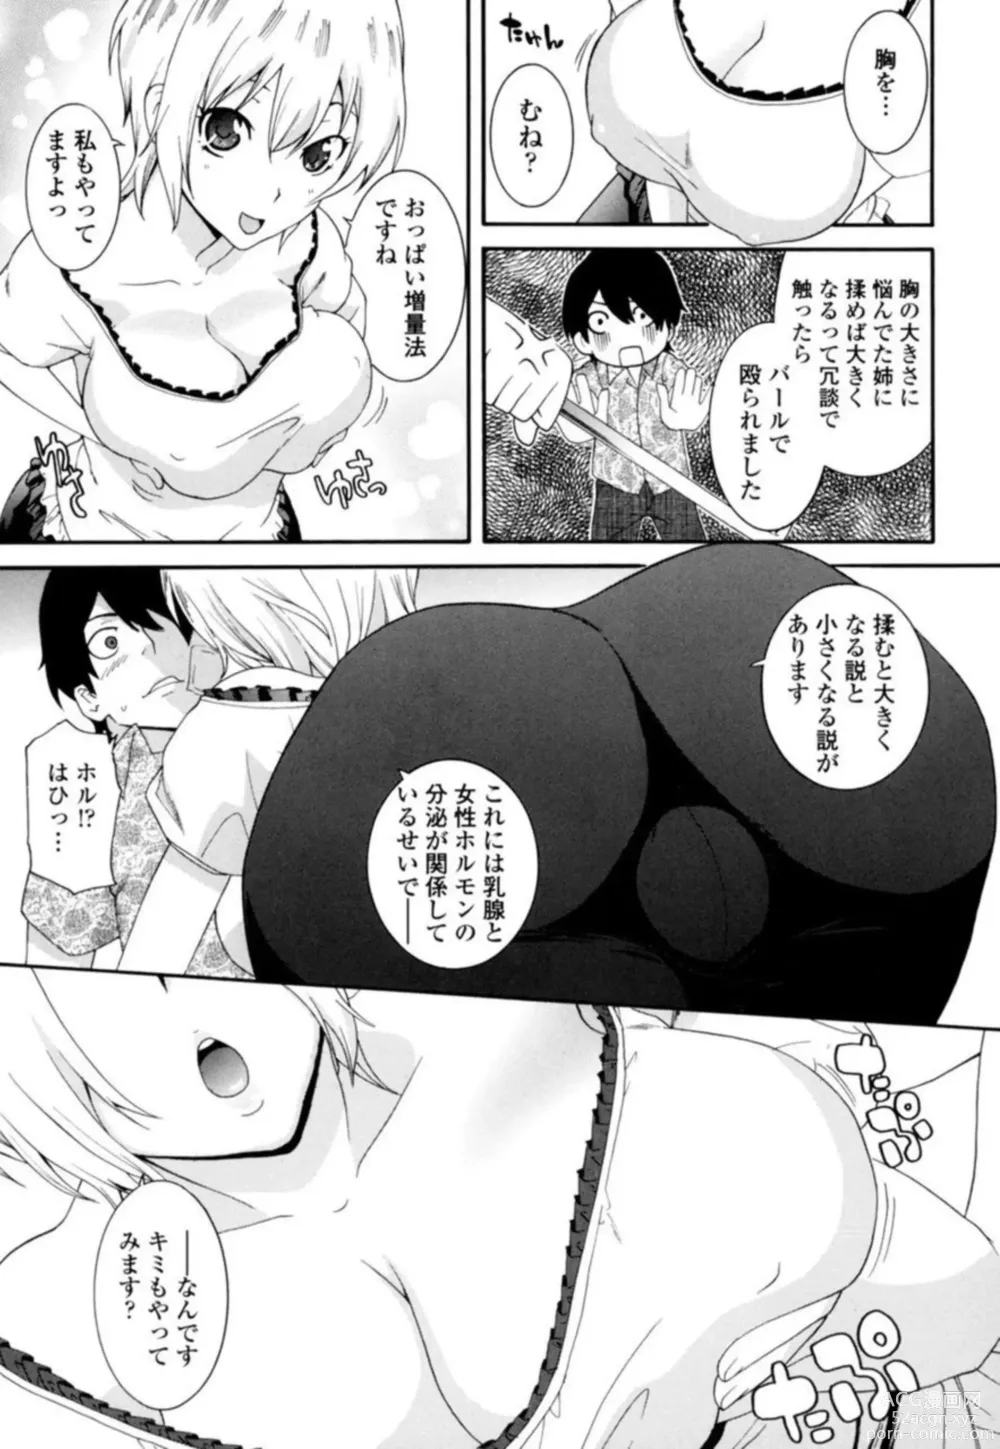 Page 5 of manga Senpai no Karada de Massāji! Mashumaro Oppai no Yūwaku 1